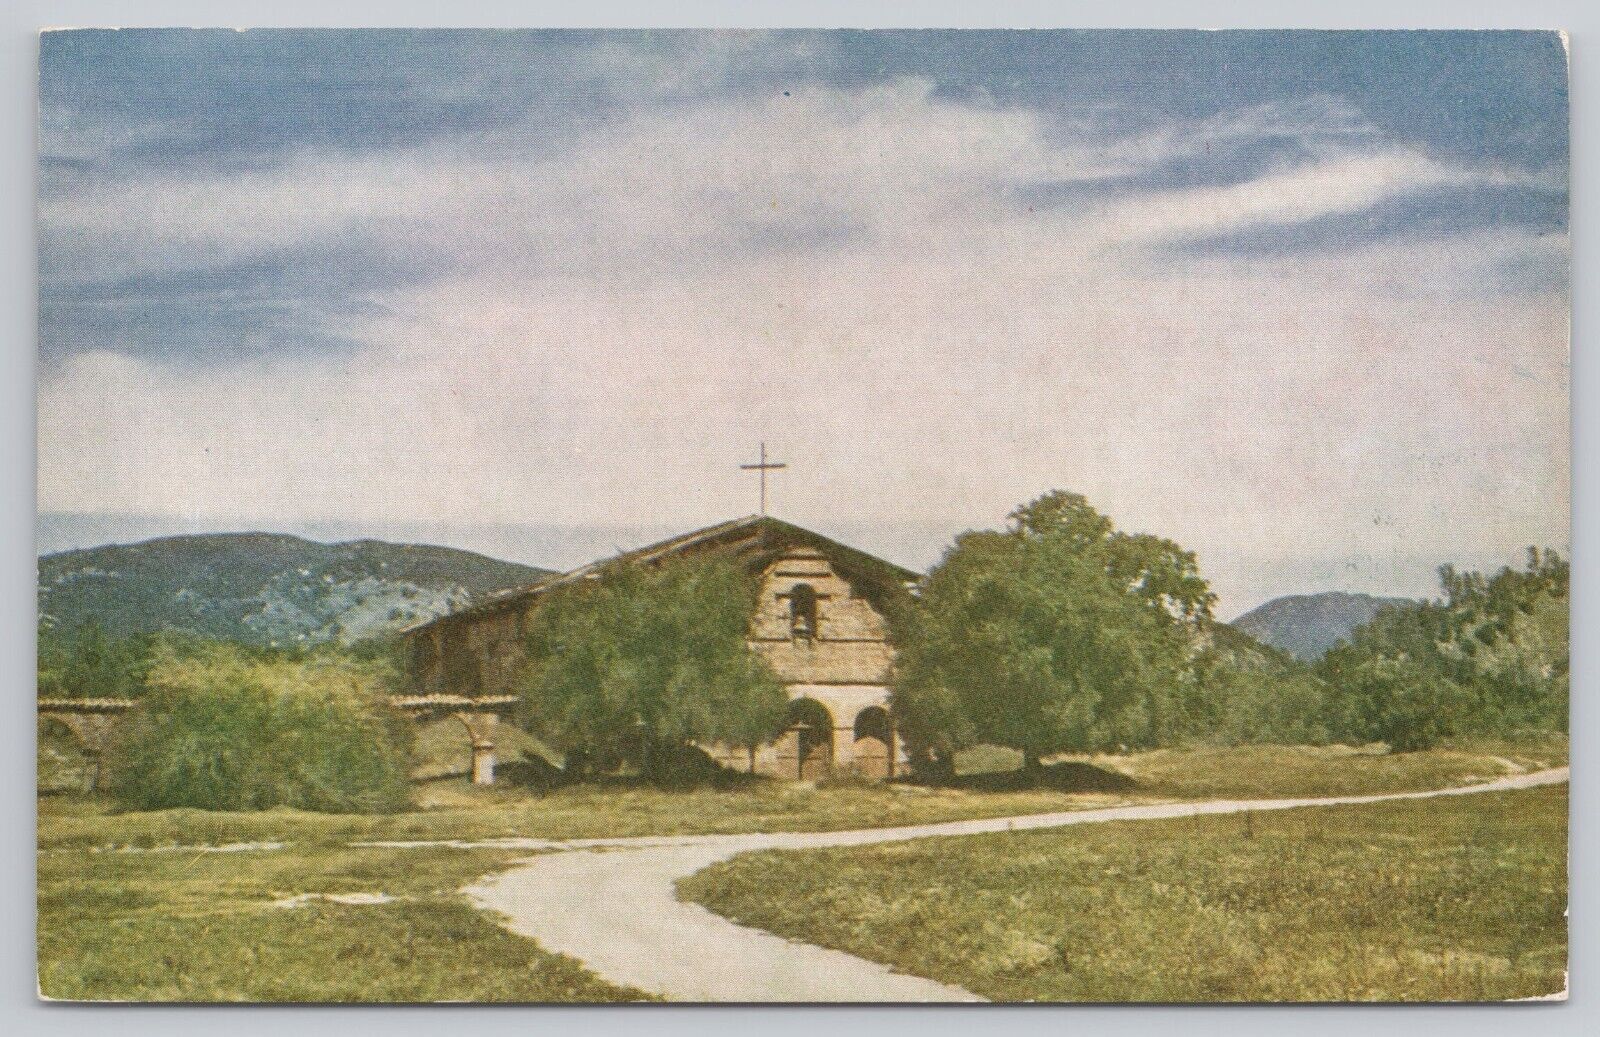 Jolon California, Mission San Antonio de Padua, Vintage Postcard